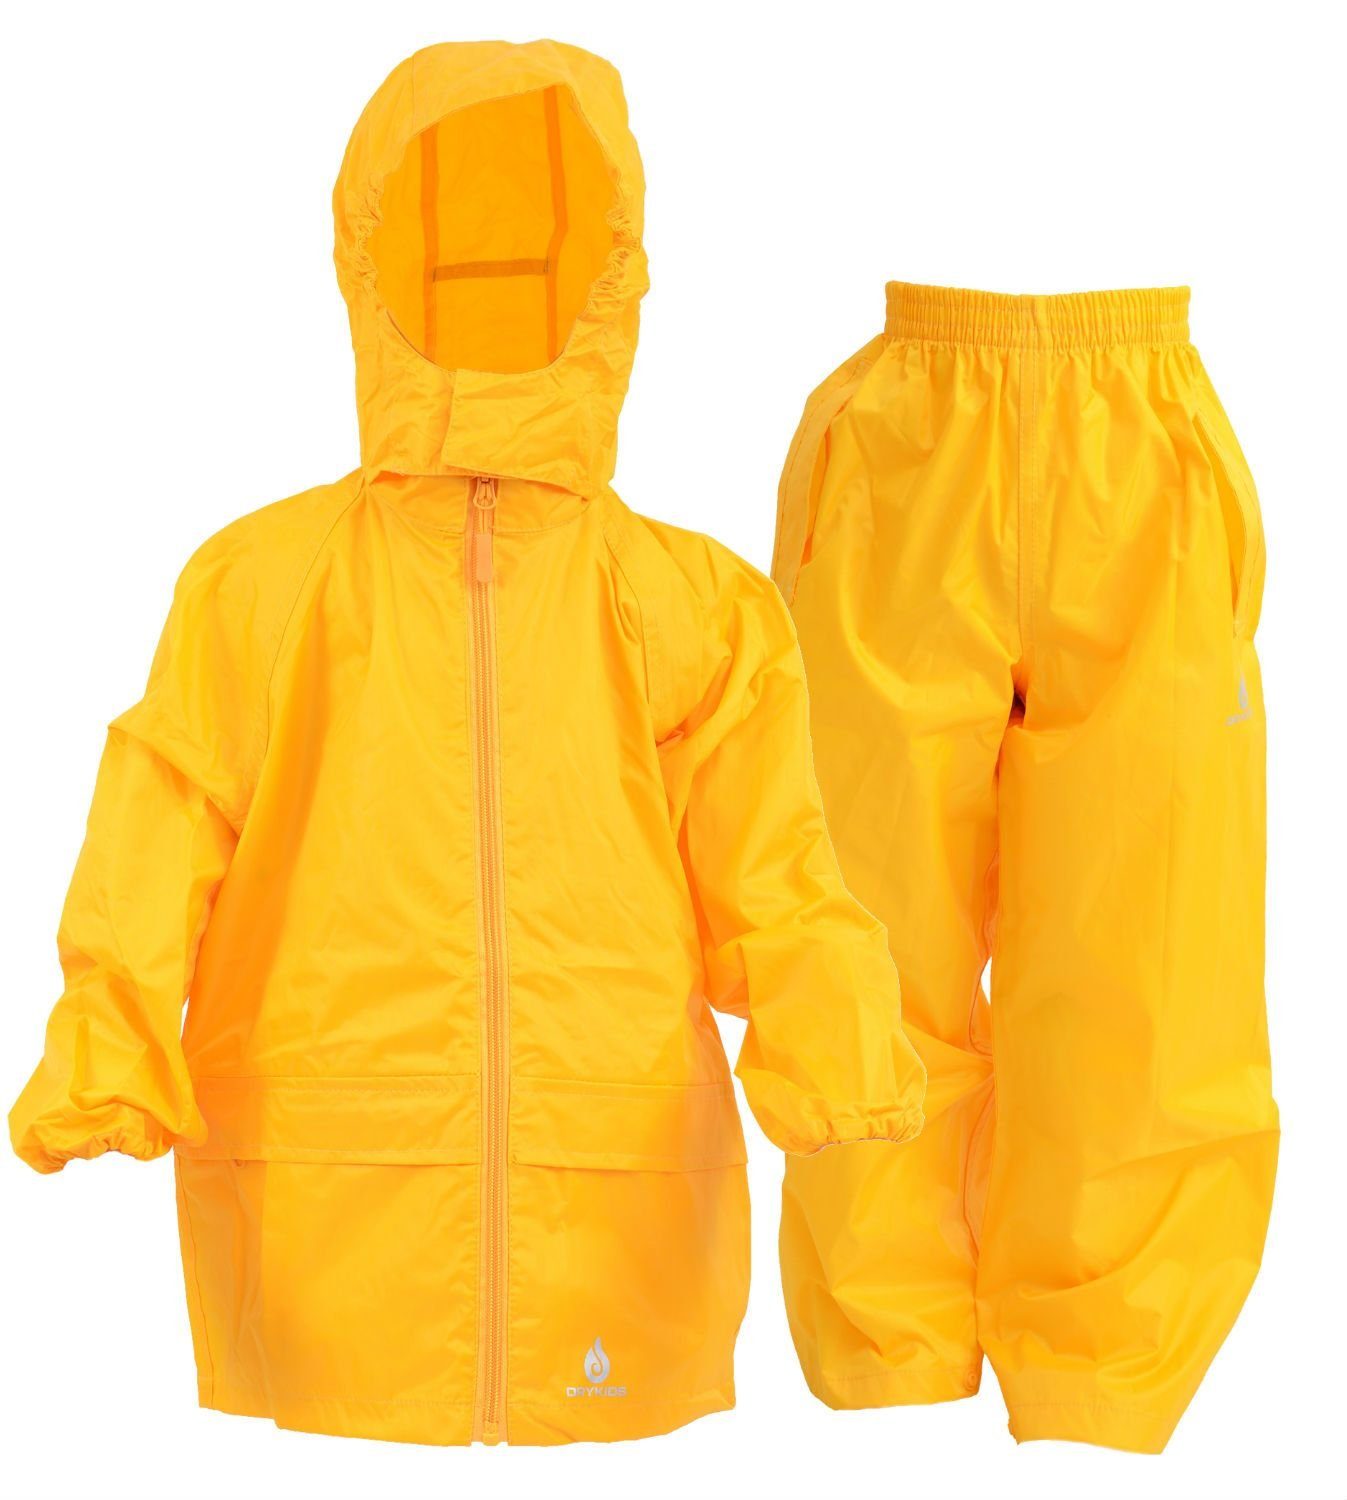 DRY KIDS Regenanzug, Wasserdichtes Kinder Regenanzug-Set, reflektierende Regenbekleidung